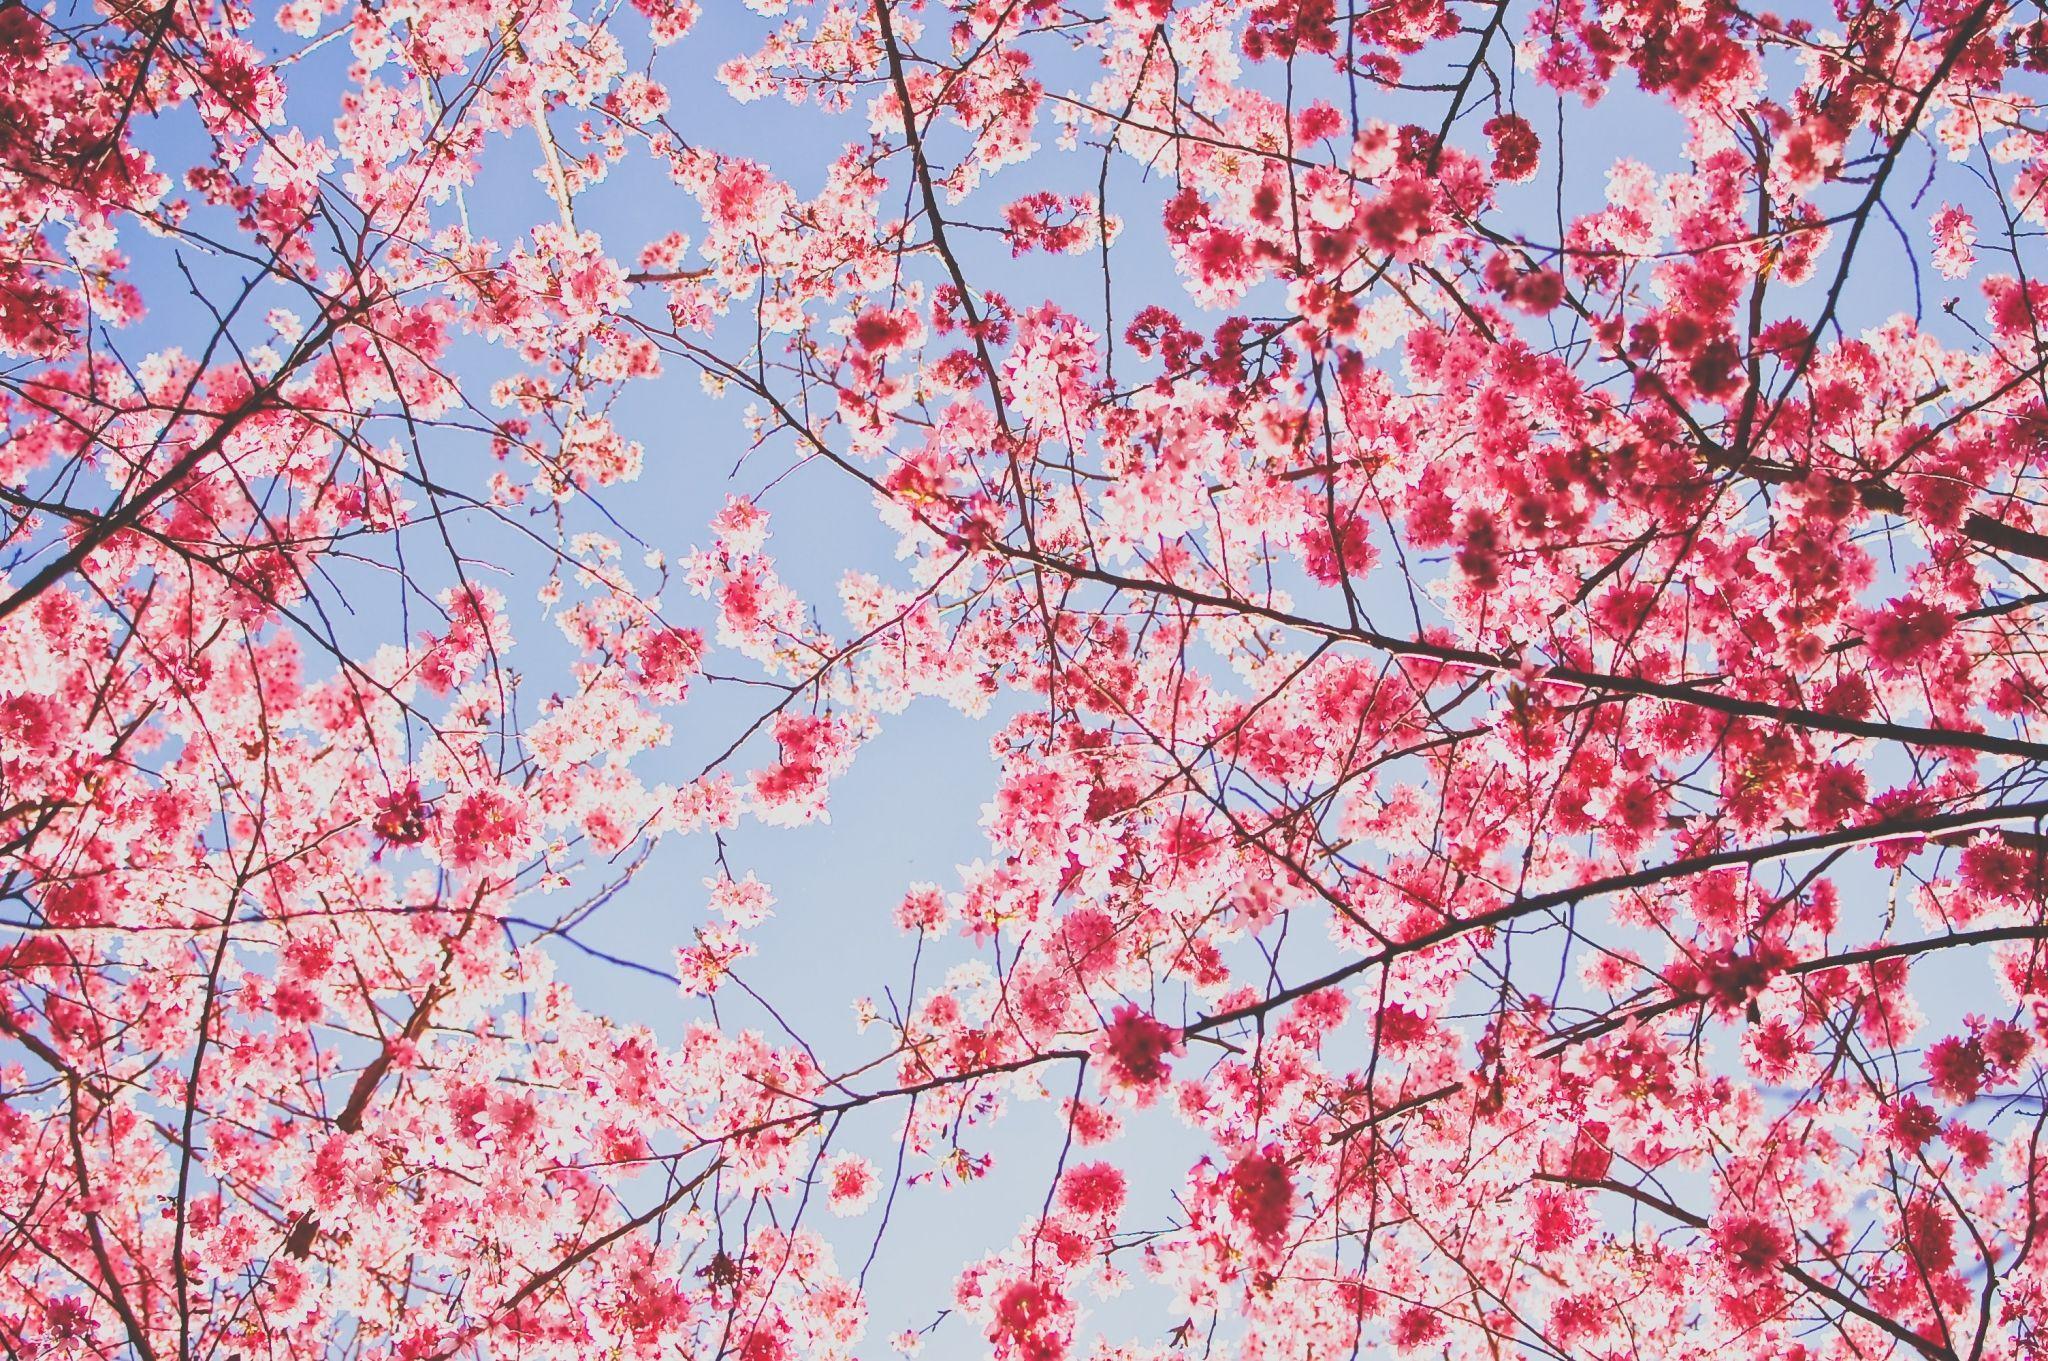 cherry blossom background image. sharovarka. Cherry